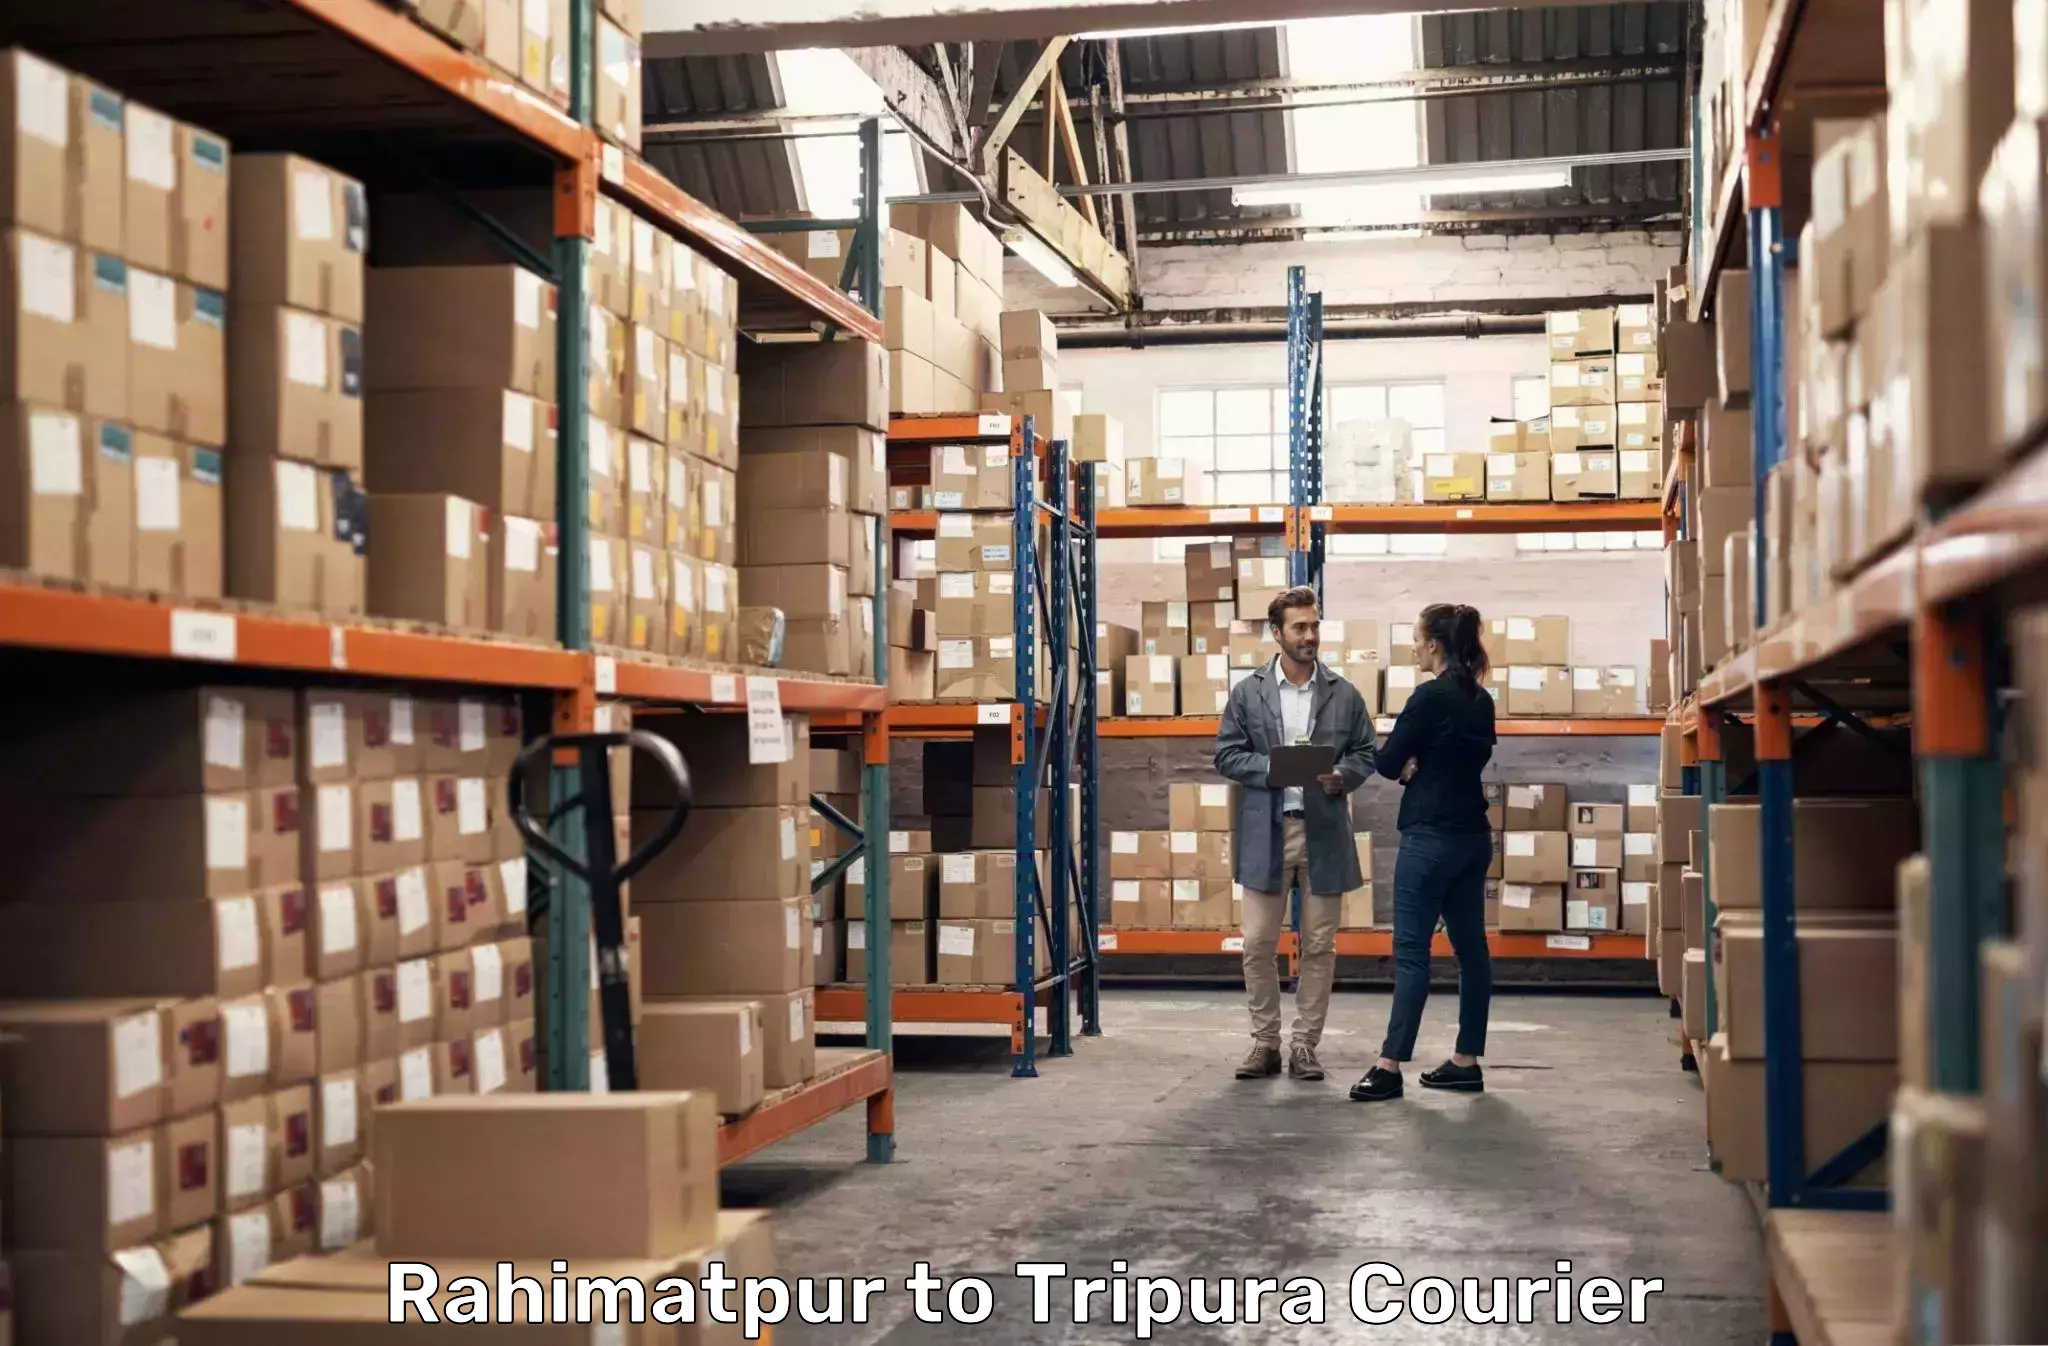 Individual parcel service Rahimatpur to Kailashahar